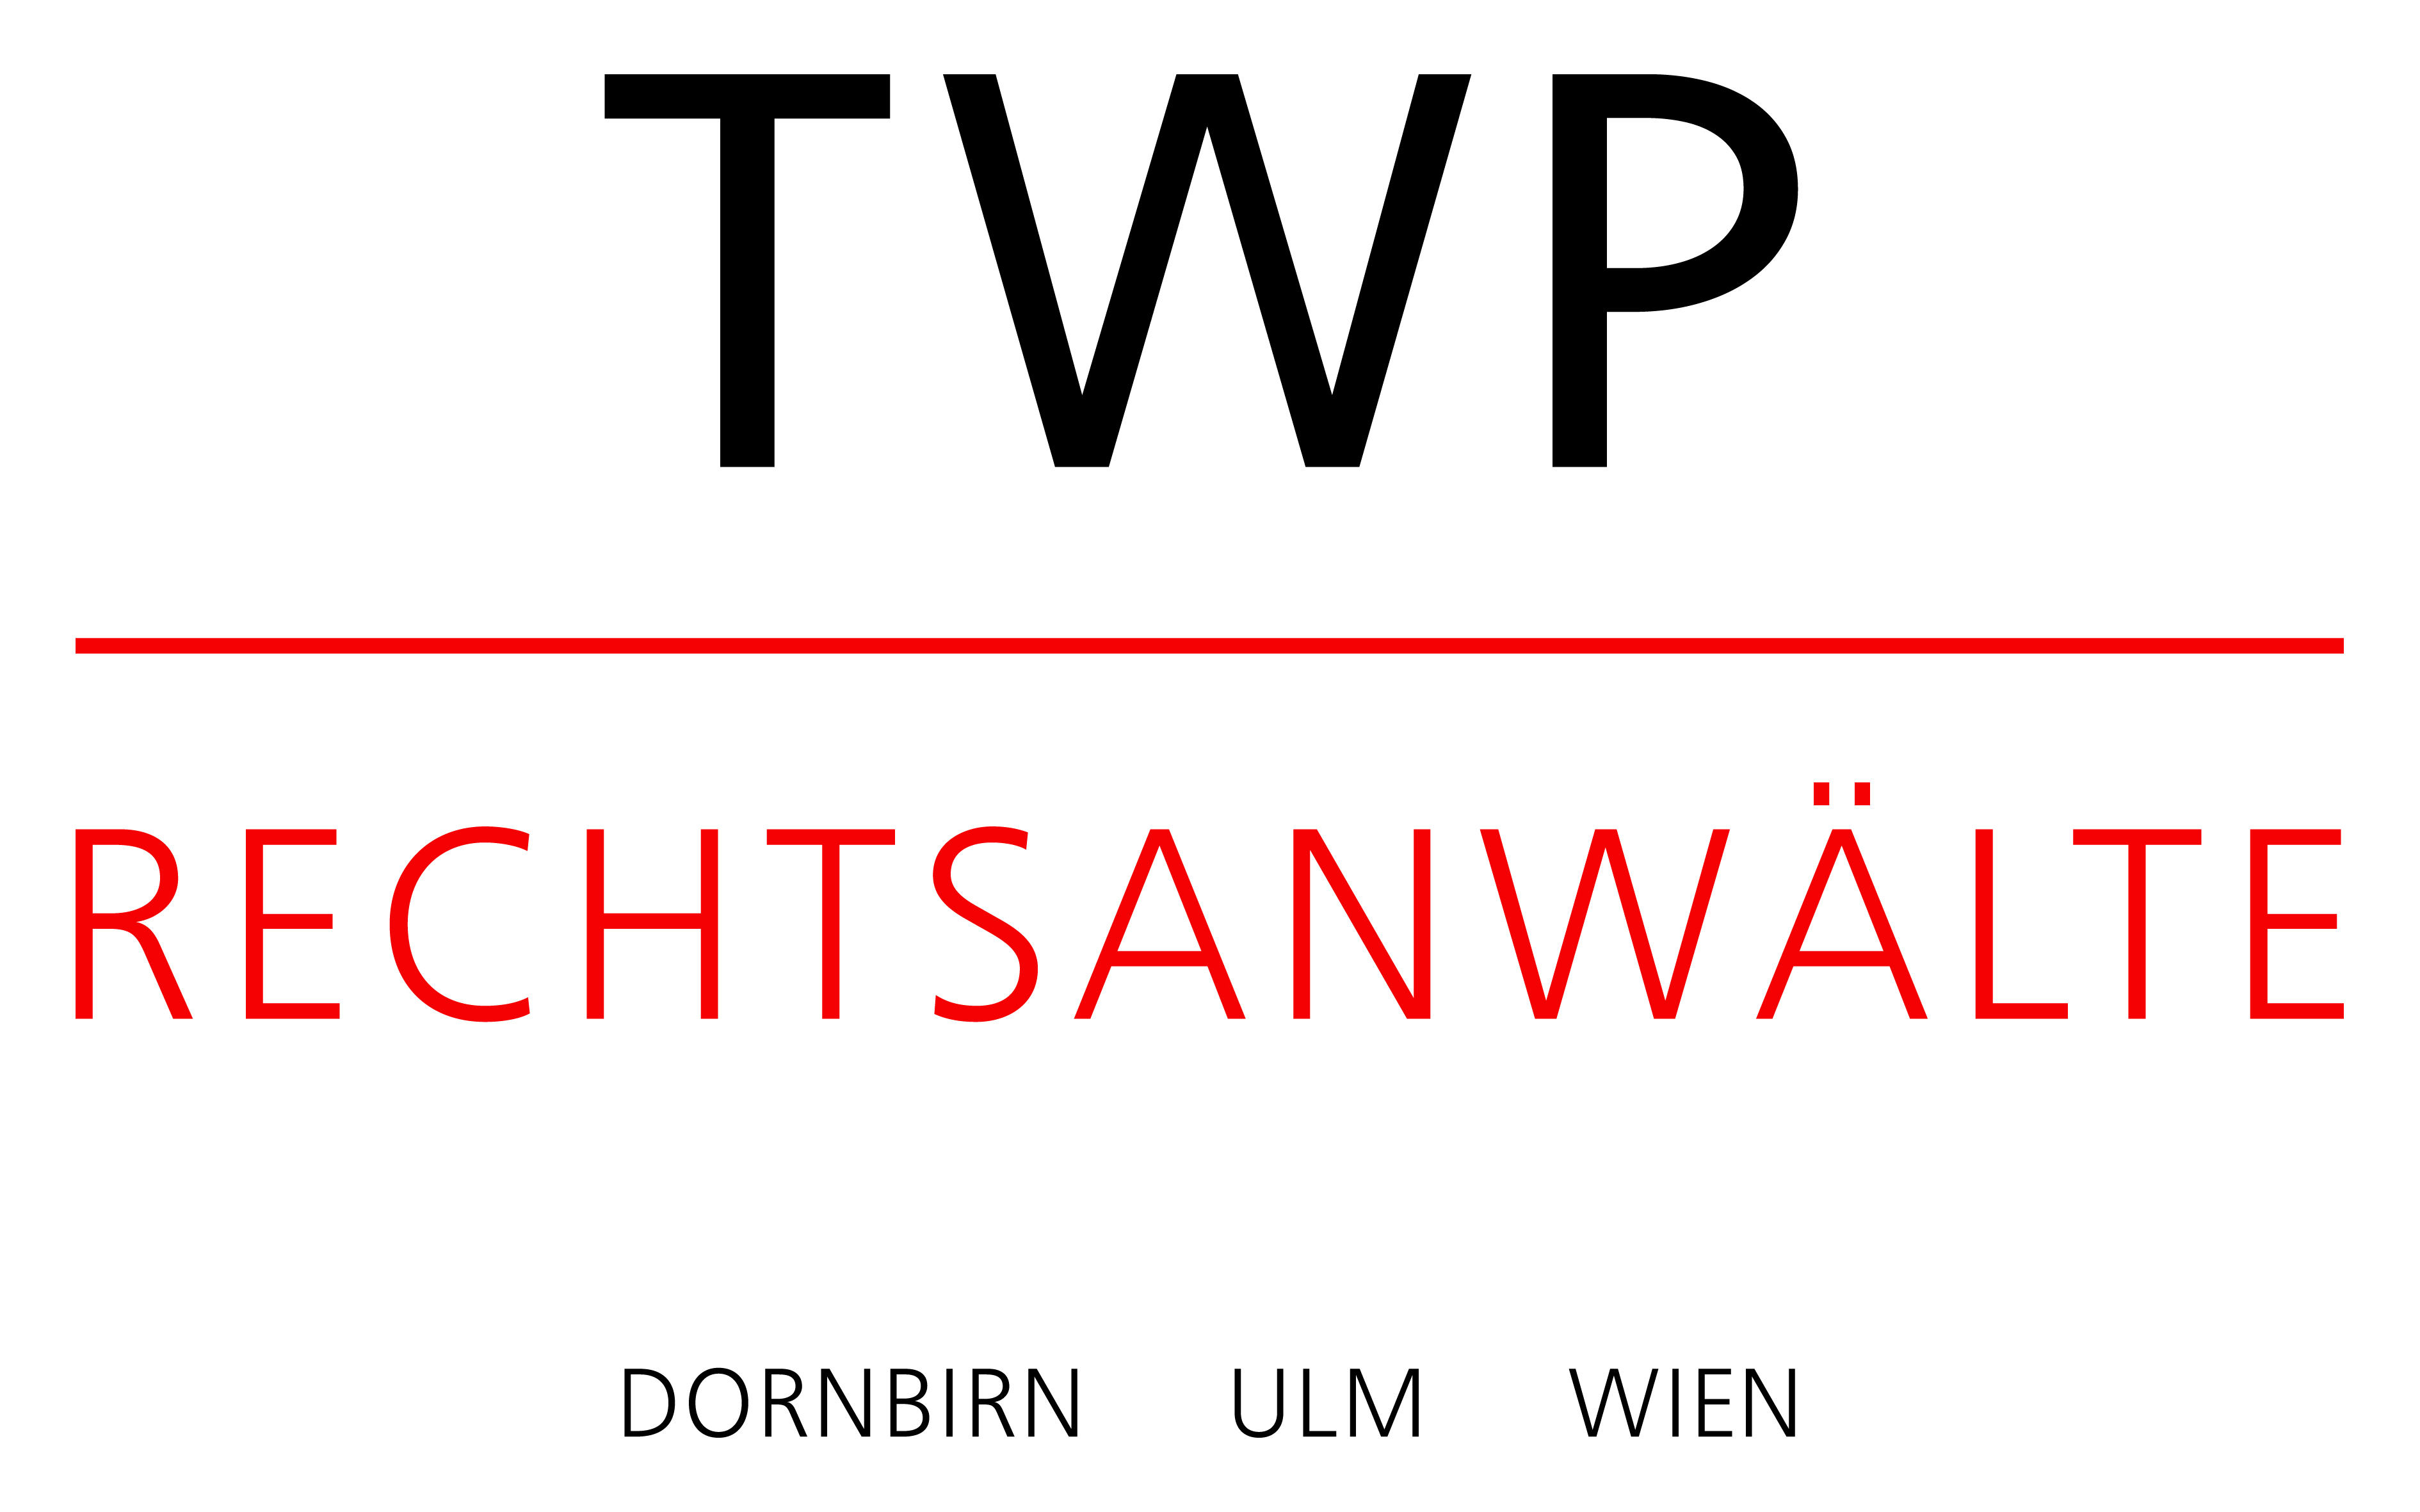 Thurnher Wittwer Pfefferkorn & Partner Rechtsanwälte GmbH